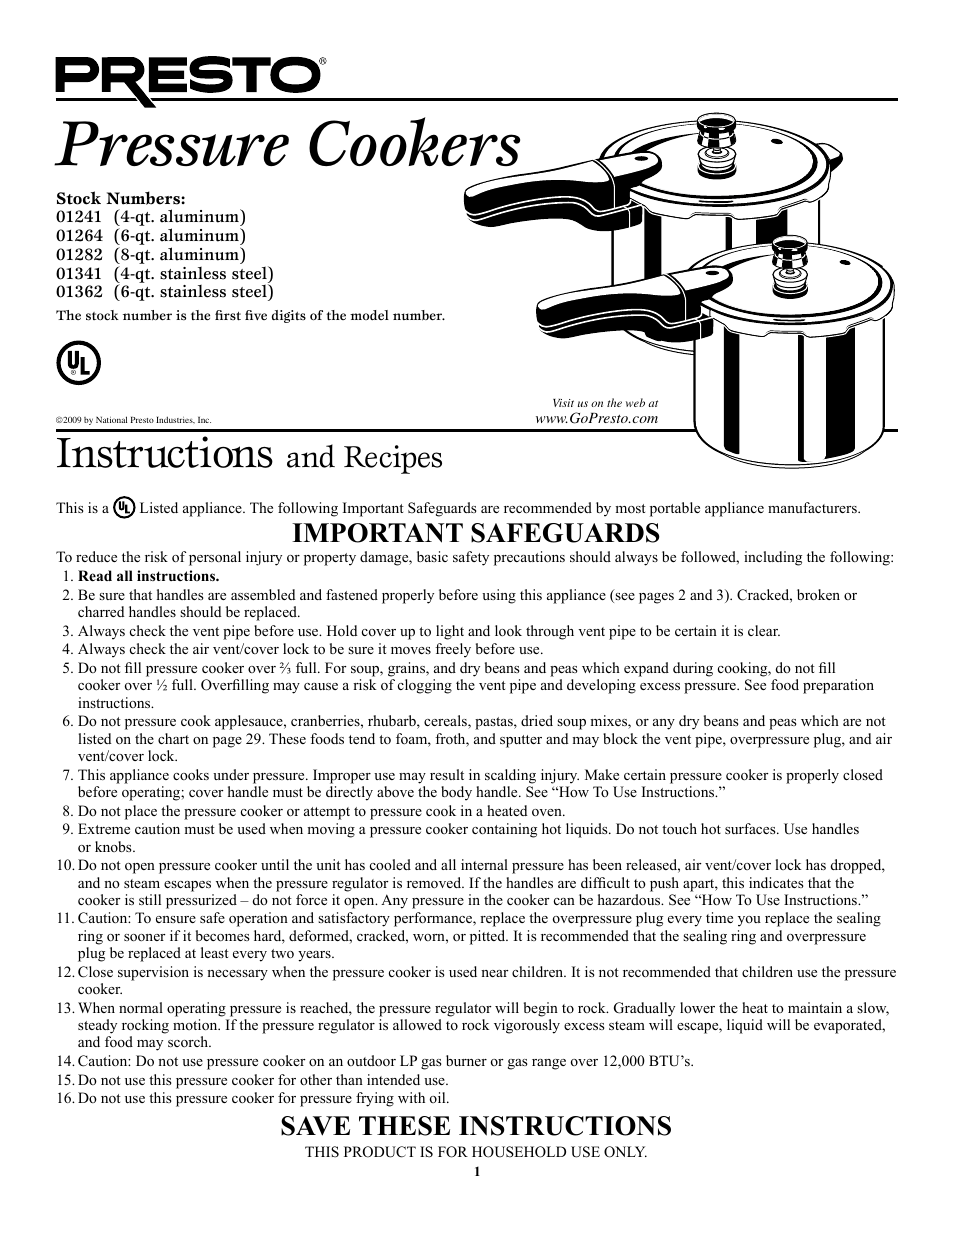 Presto 49831 Pressure Cooker Instruction/Recipe Book